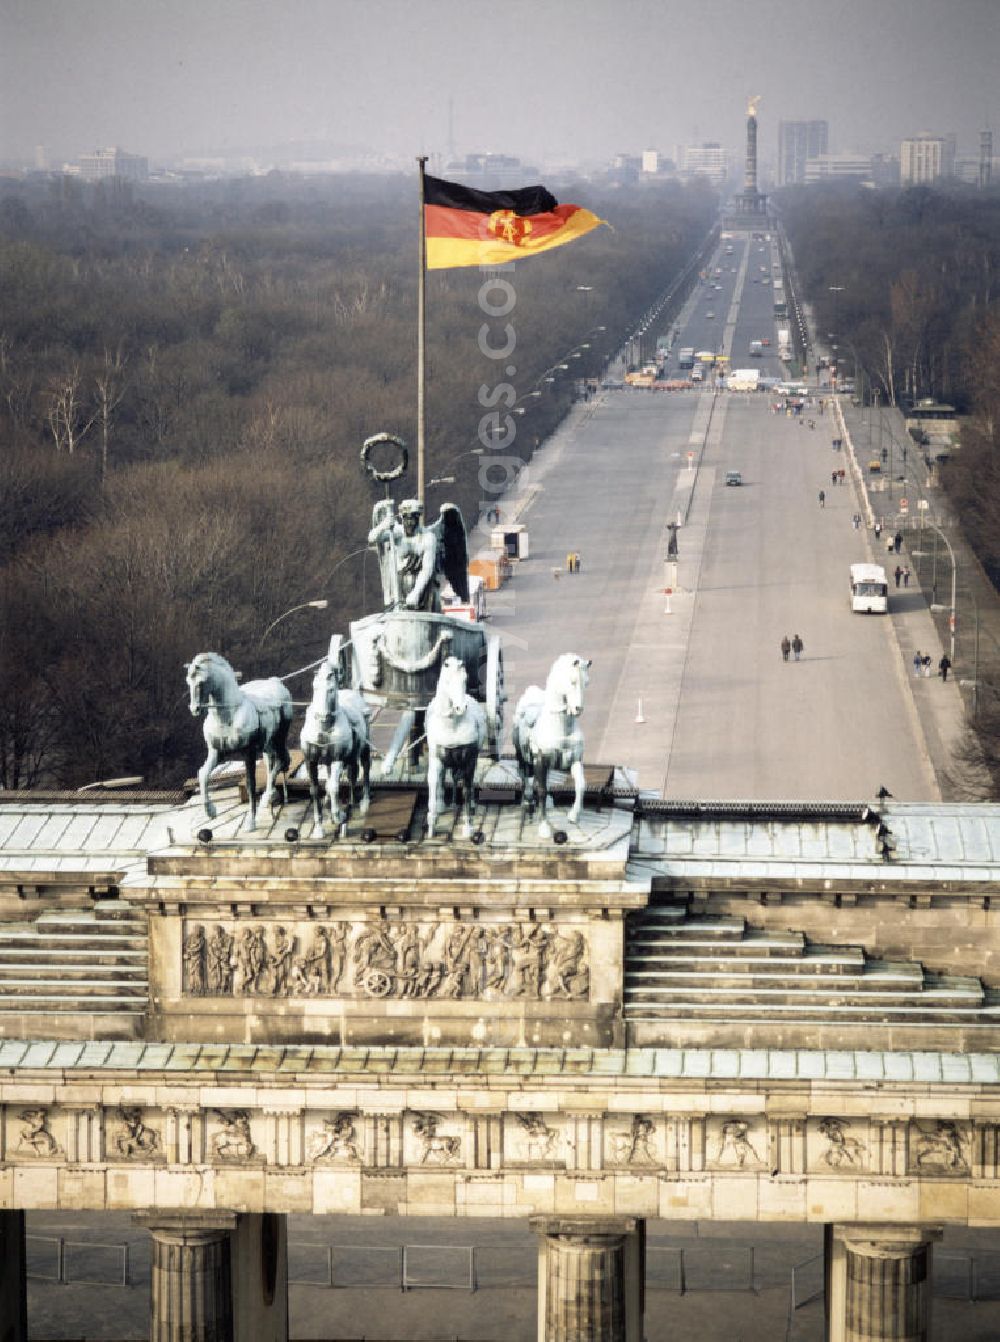 GDR image archive: Berlin - Blick auf die mit der DDR-Fahne geschmückte Quadriga des Brandenburger Tor am Pariser Platz in Berlin-Mitte vor der Einholung zur Wiedervereinigung.